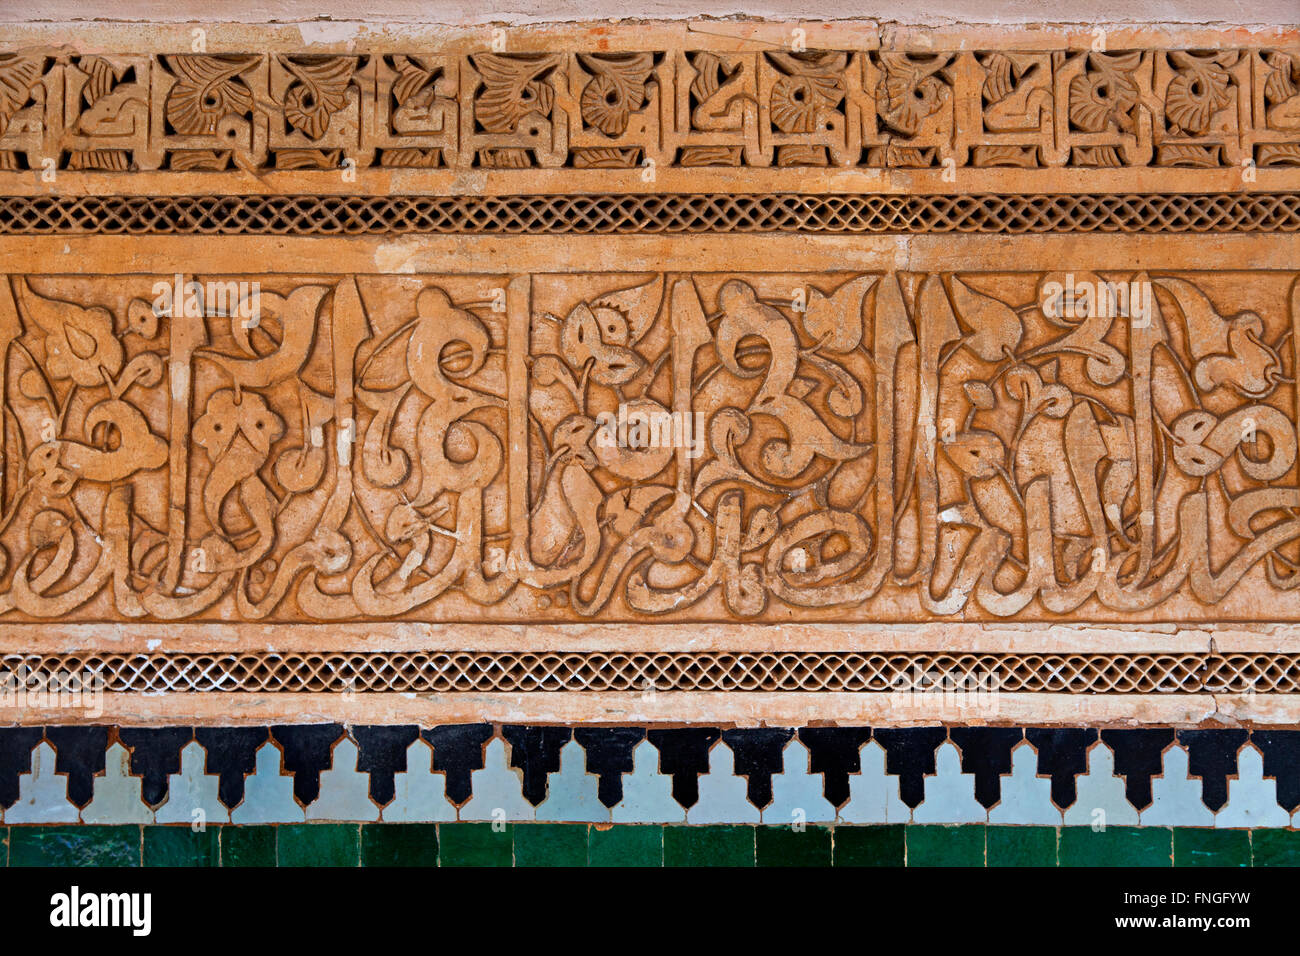 Il gesso e mosaico di decorazione murale in medersa Ben Youssef, Marrakech, Marocco Foto Stock